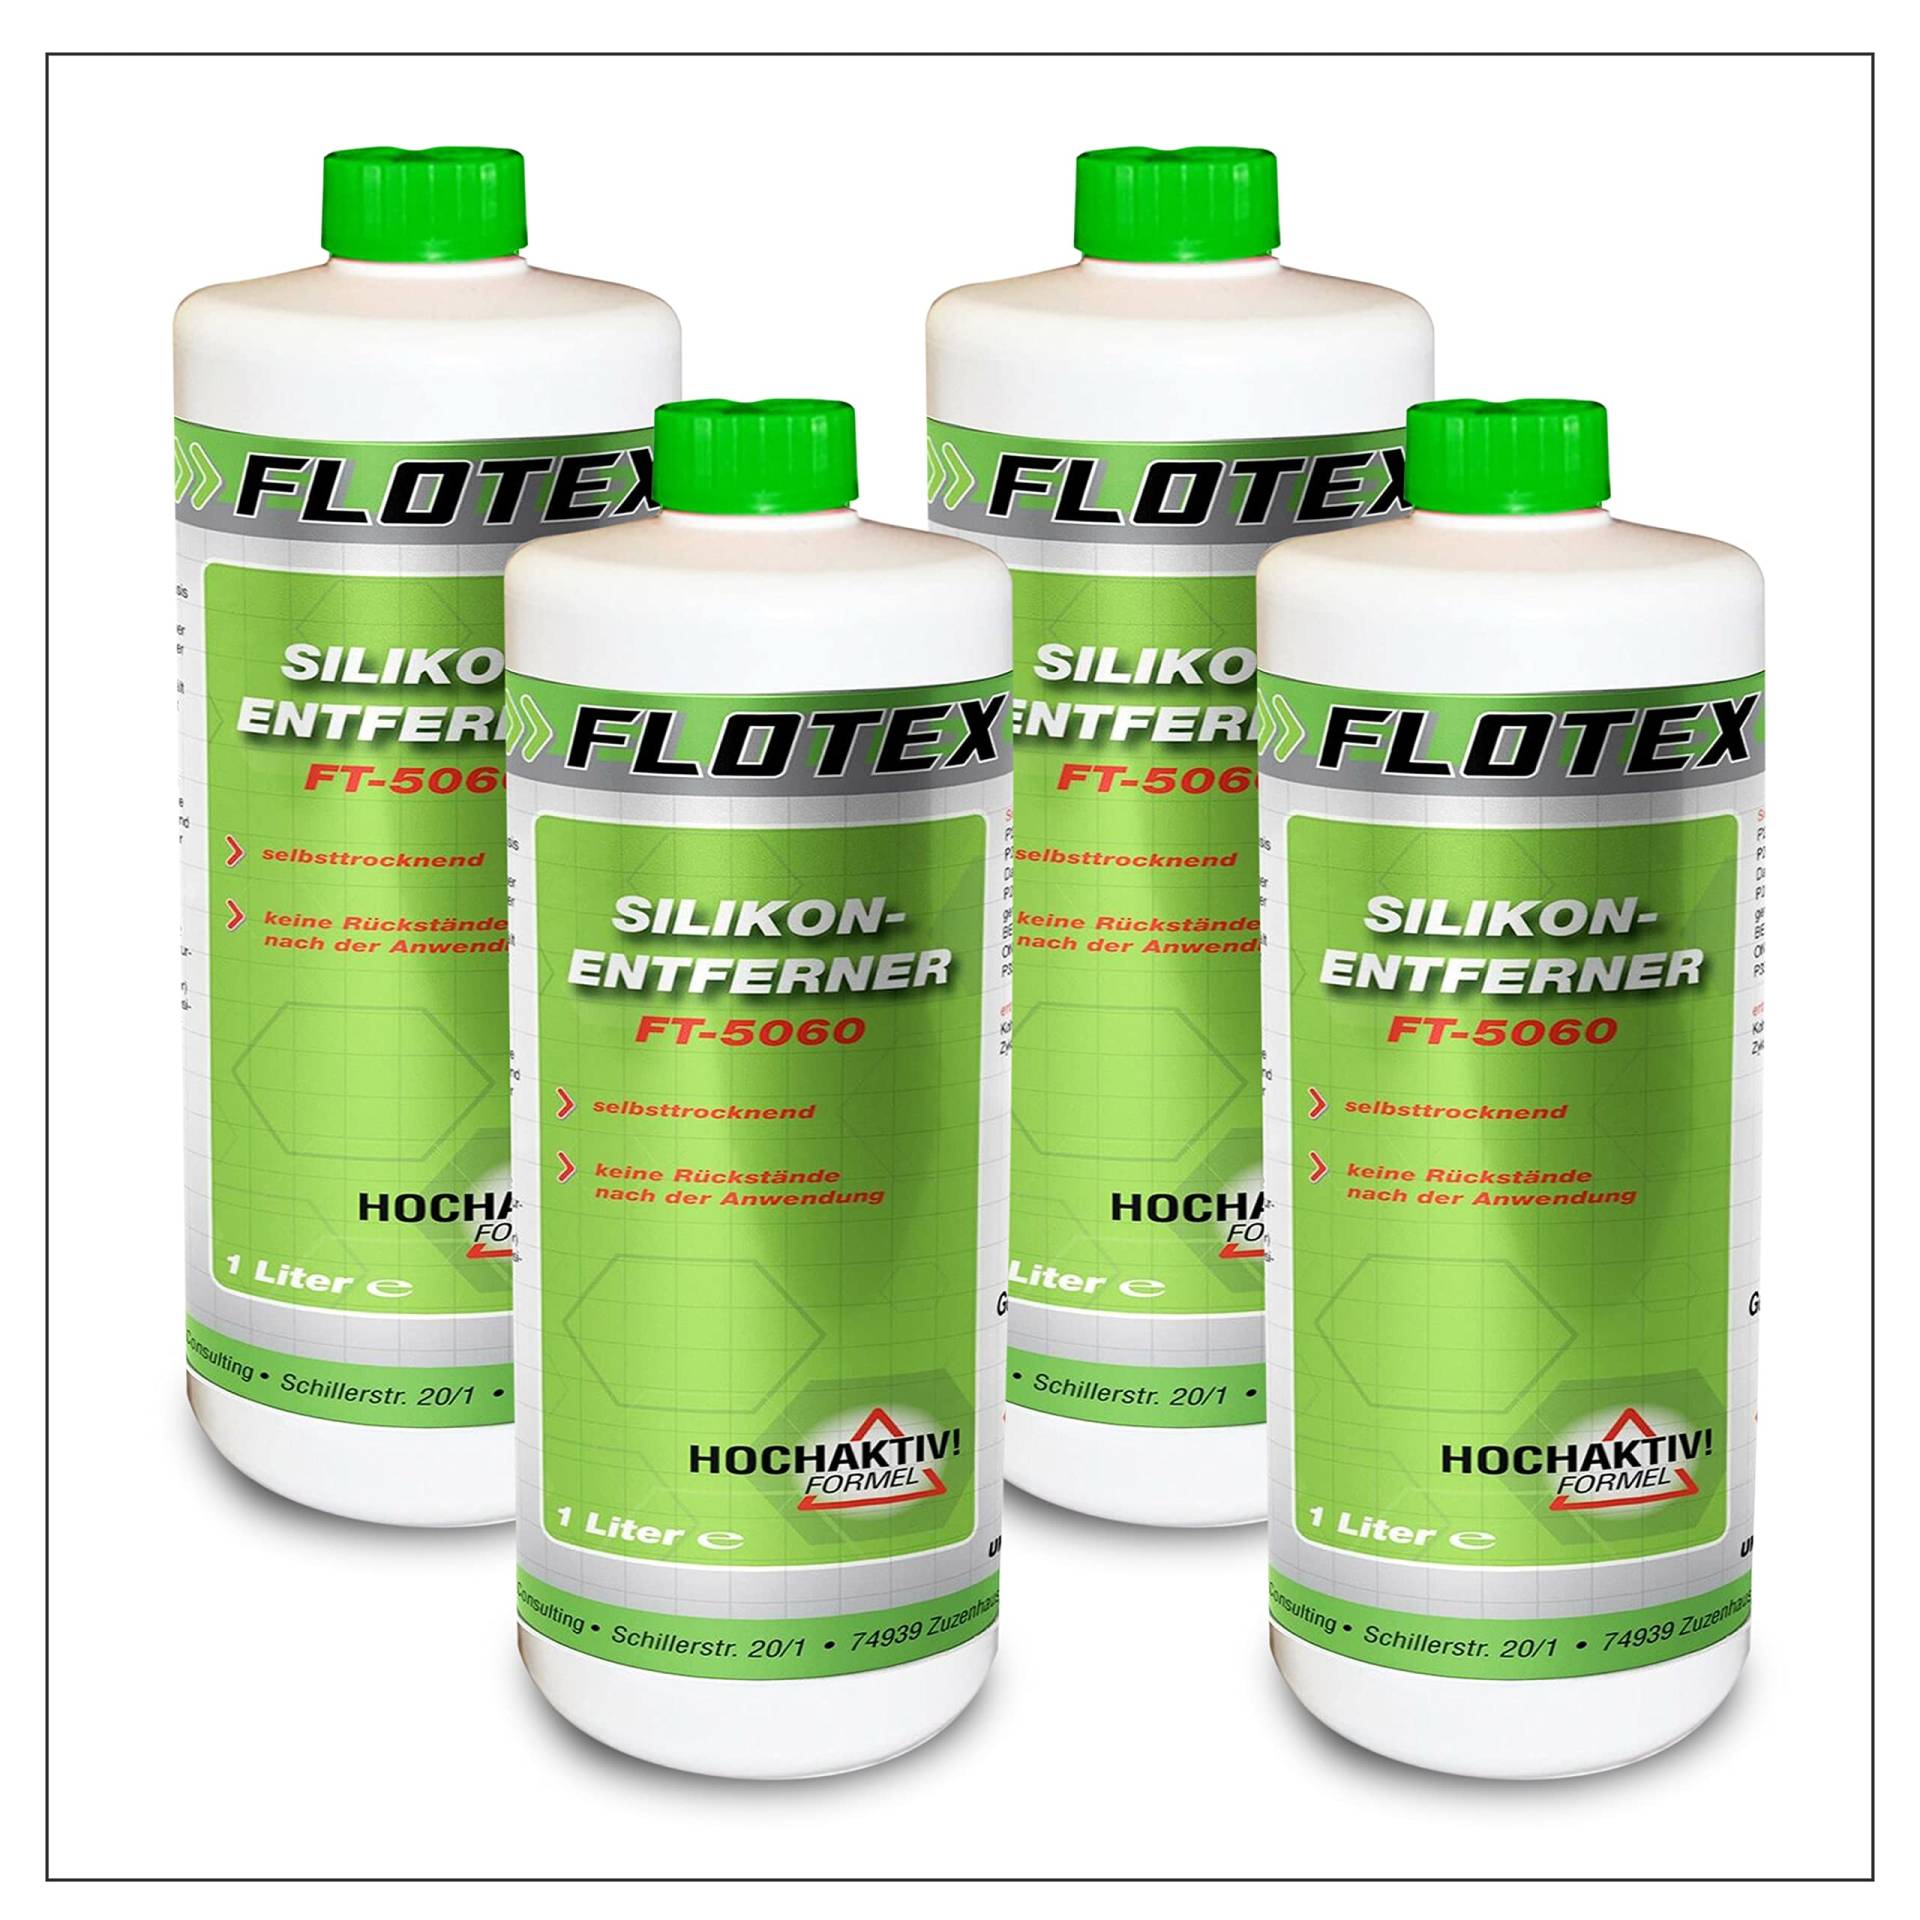 Flotex® - Silikonentferner 4x1l IFT-5060 | Wachsentferner für Autolack | Intensive Reinigung | Der Silikonreiniger entfernt problemlos Öl, Fett & Silikon | Besonders schonend von Flotex